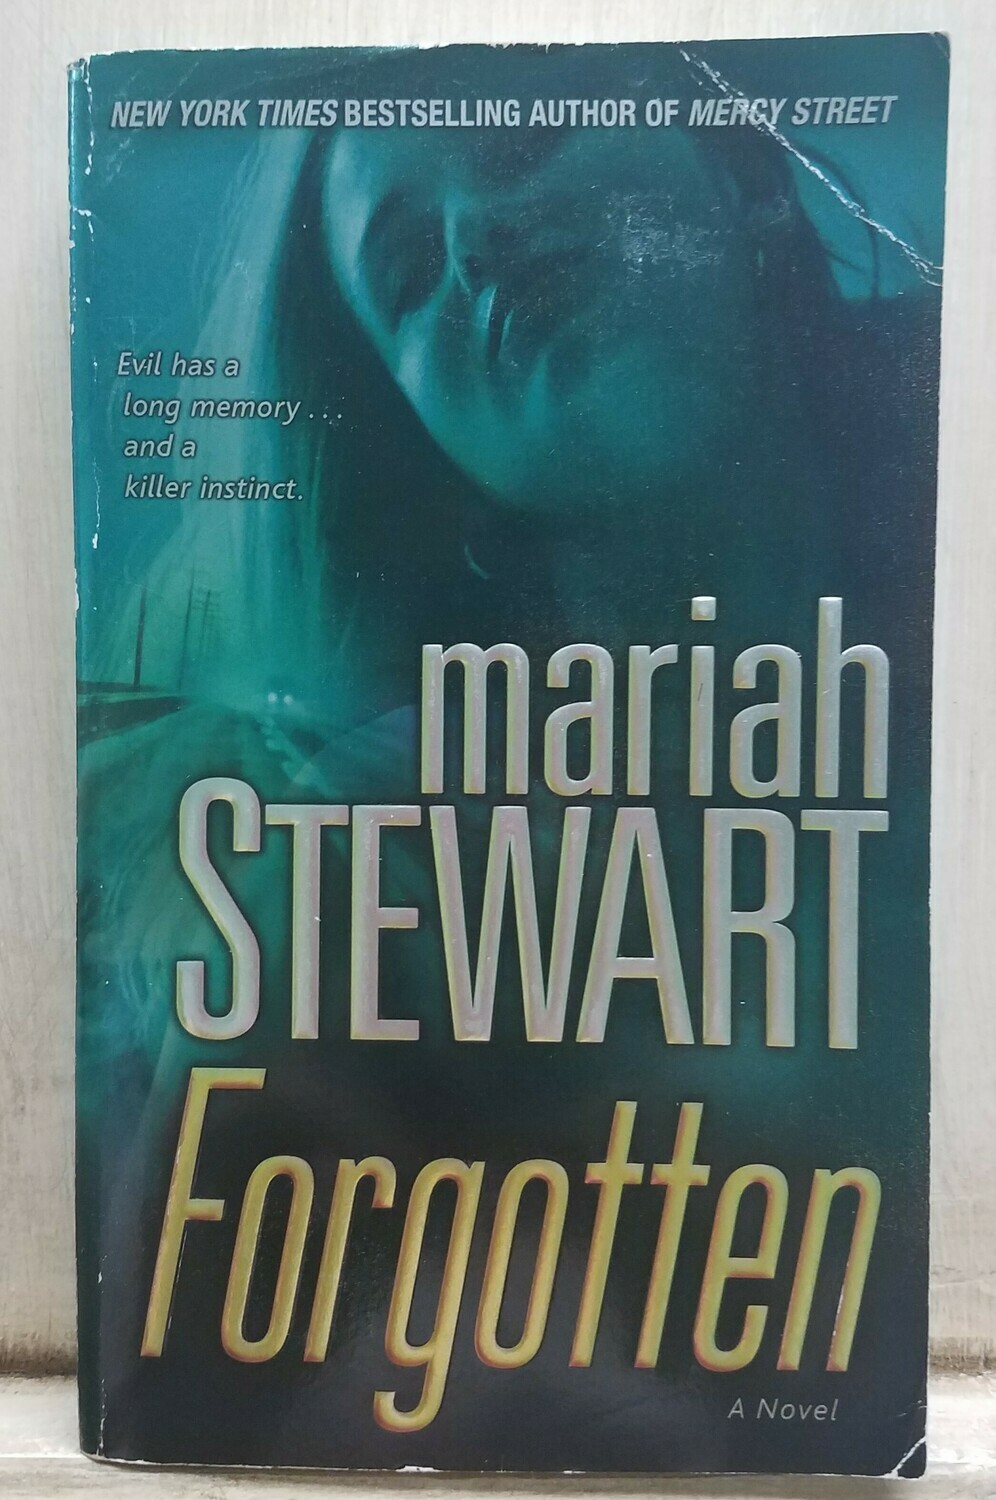 Forgotten by Mariah Stewart